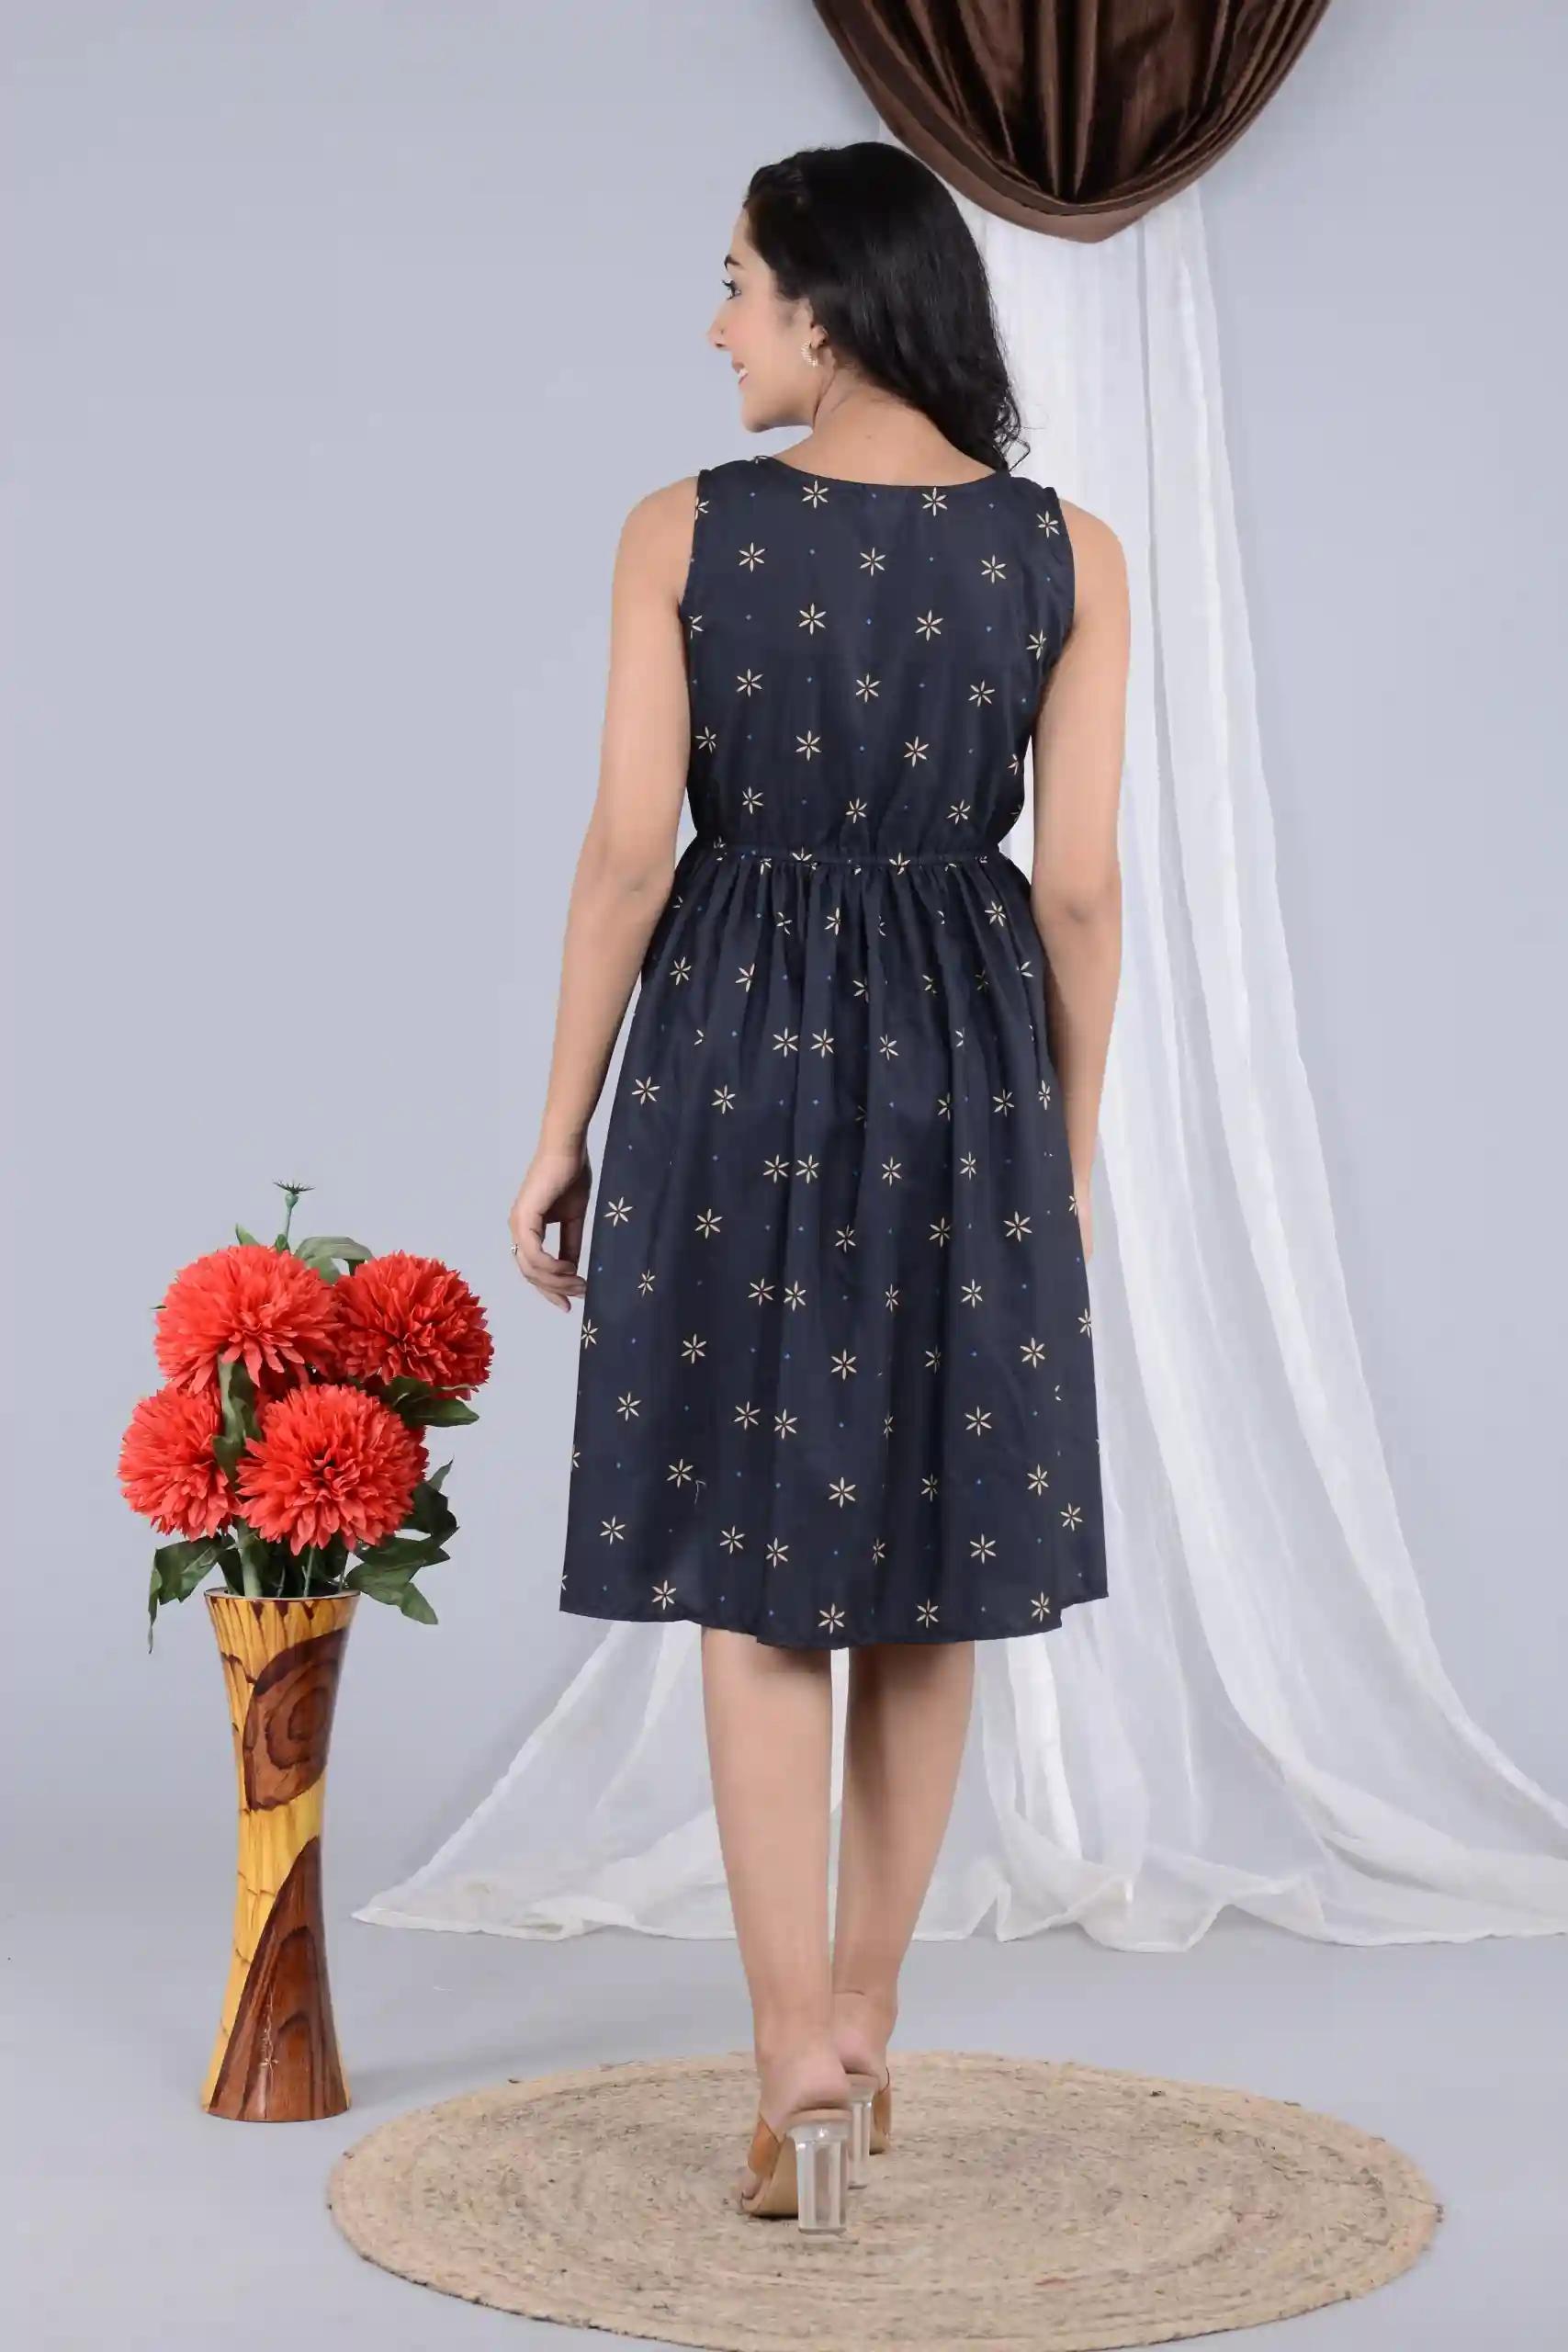 Floral Print Knee Length Sleeveless Dress for Women